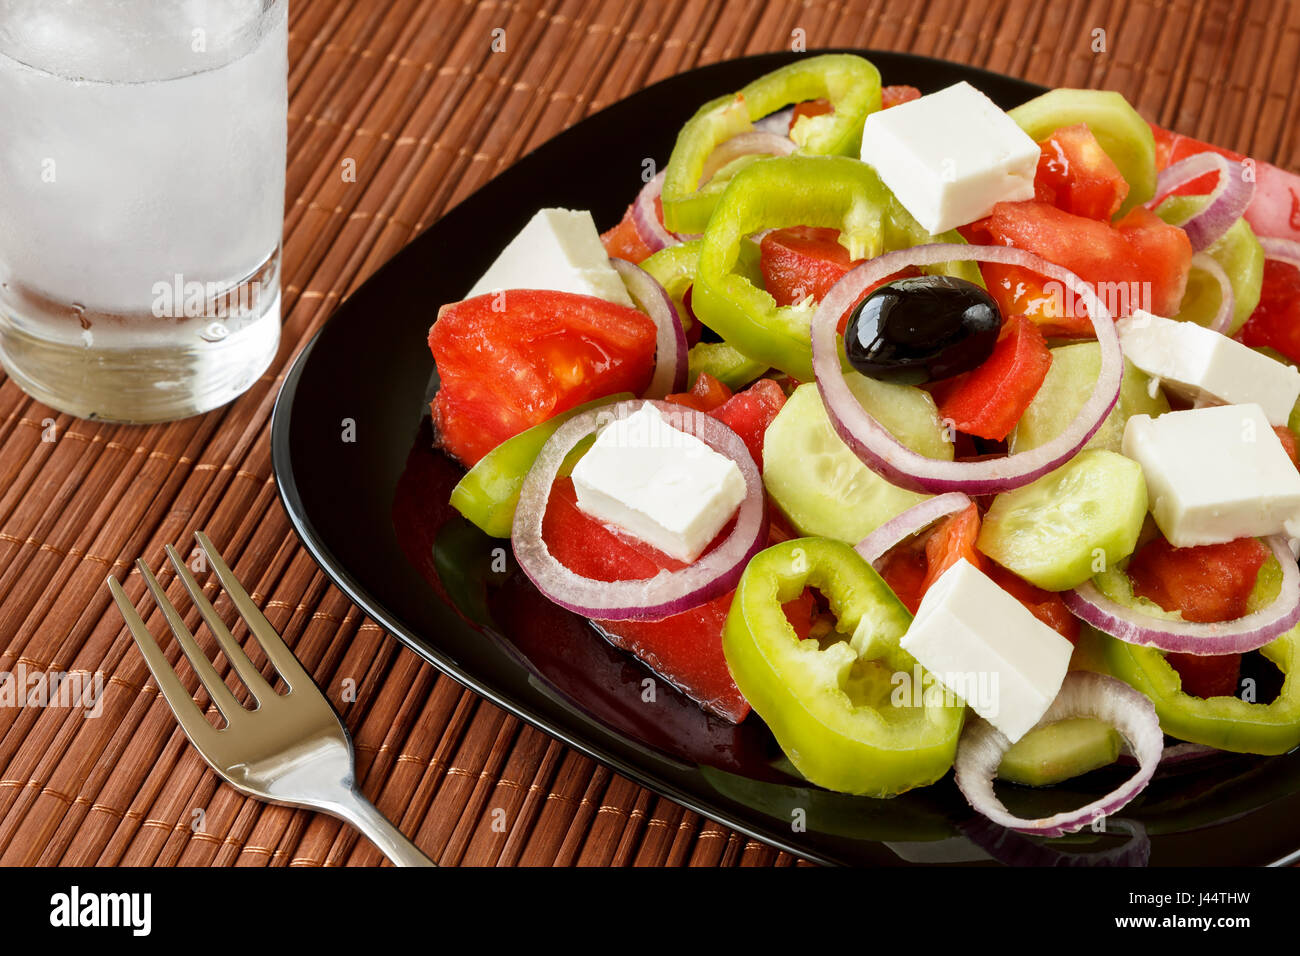 Glas Ouzo trinken und frischer Salat mit grünem Pfeffer und roten Zwiebelringen, Tomaten, Gurken und Hüttenkäse. Traditionelle balkan Küche Vorspeise Stockfoto